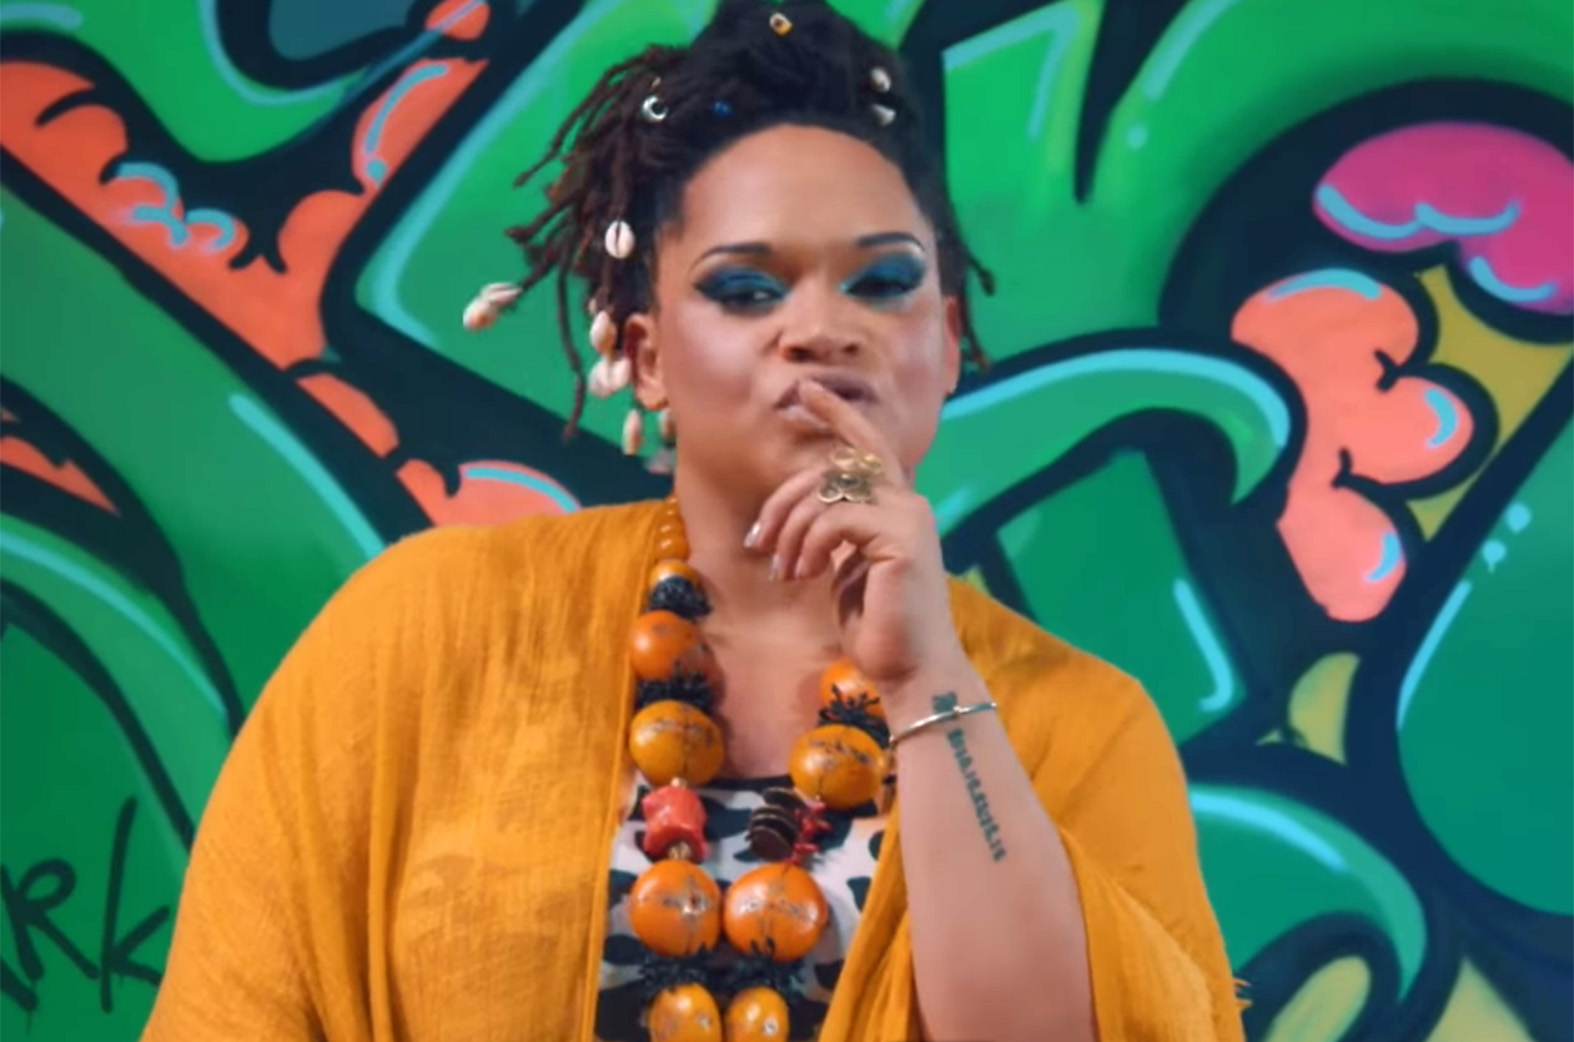 Video Review: Yo Chale by Sena Dagadu feat. Sarkodie